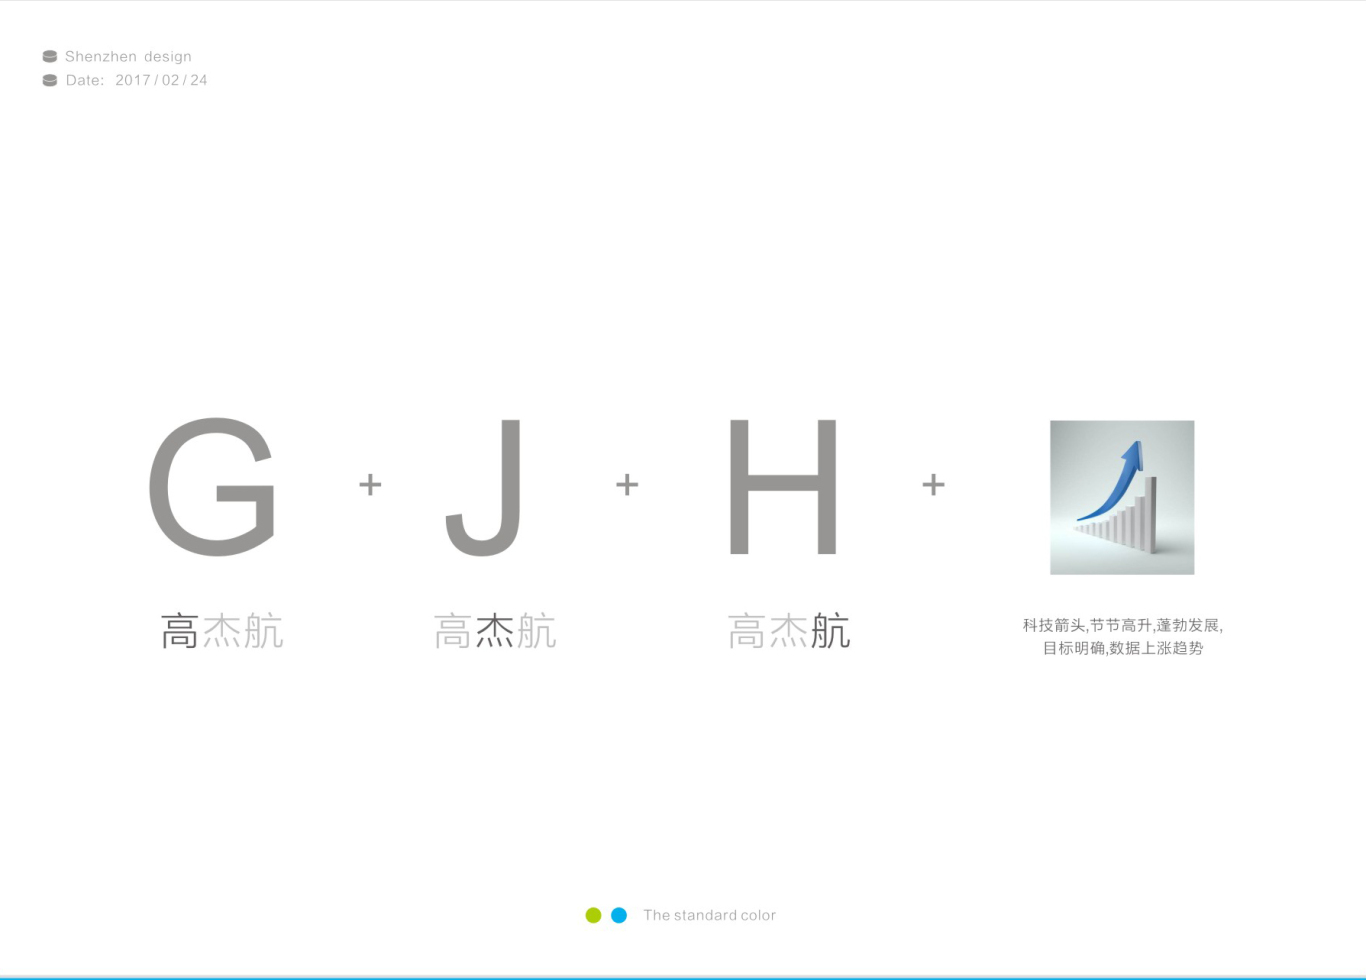 高杰航電子科技公司logo設計圖1